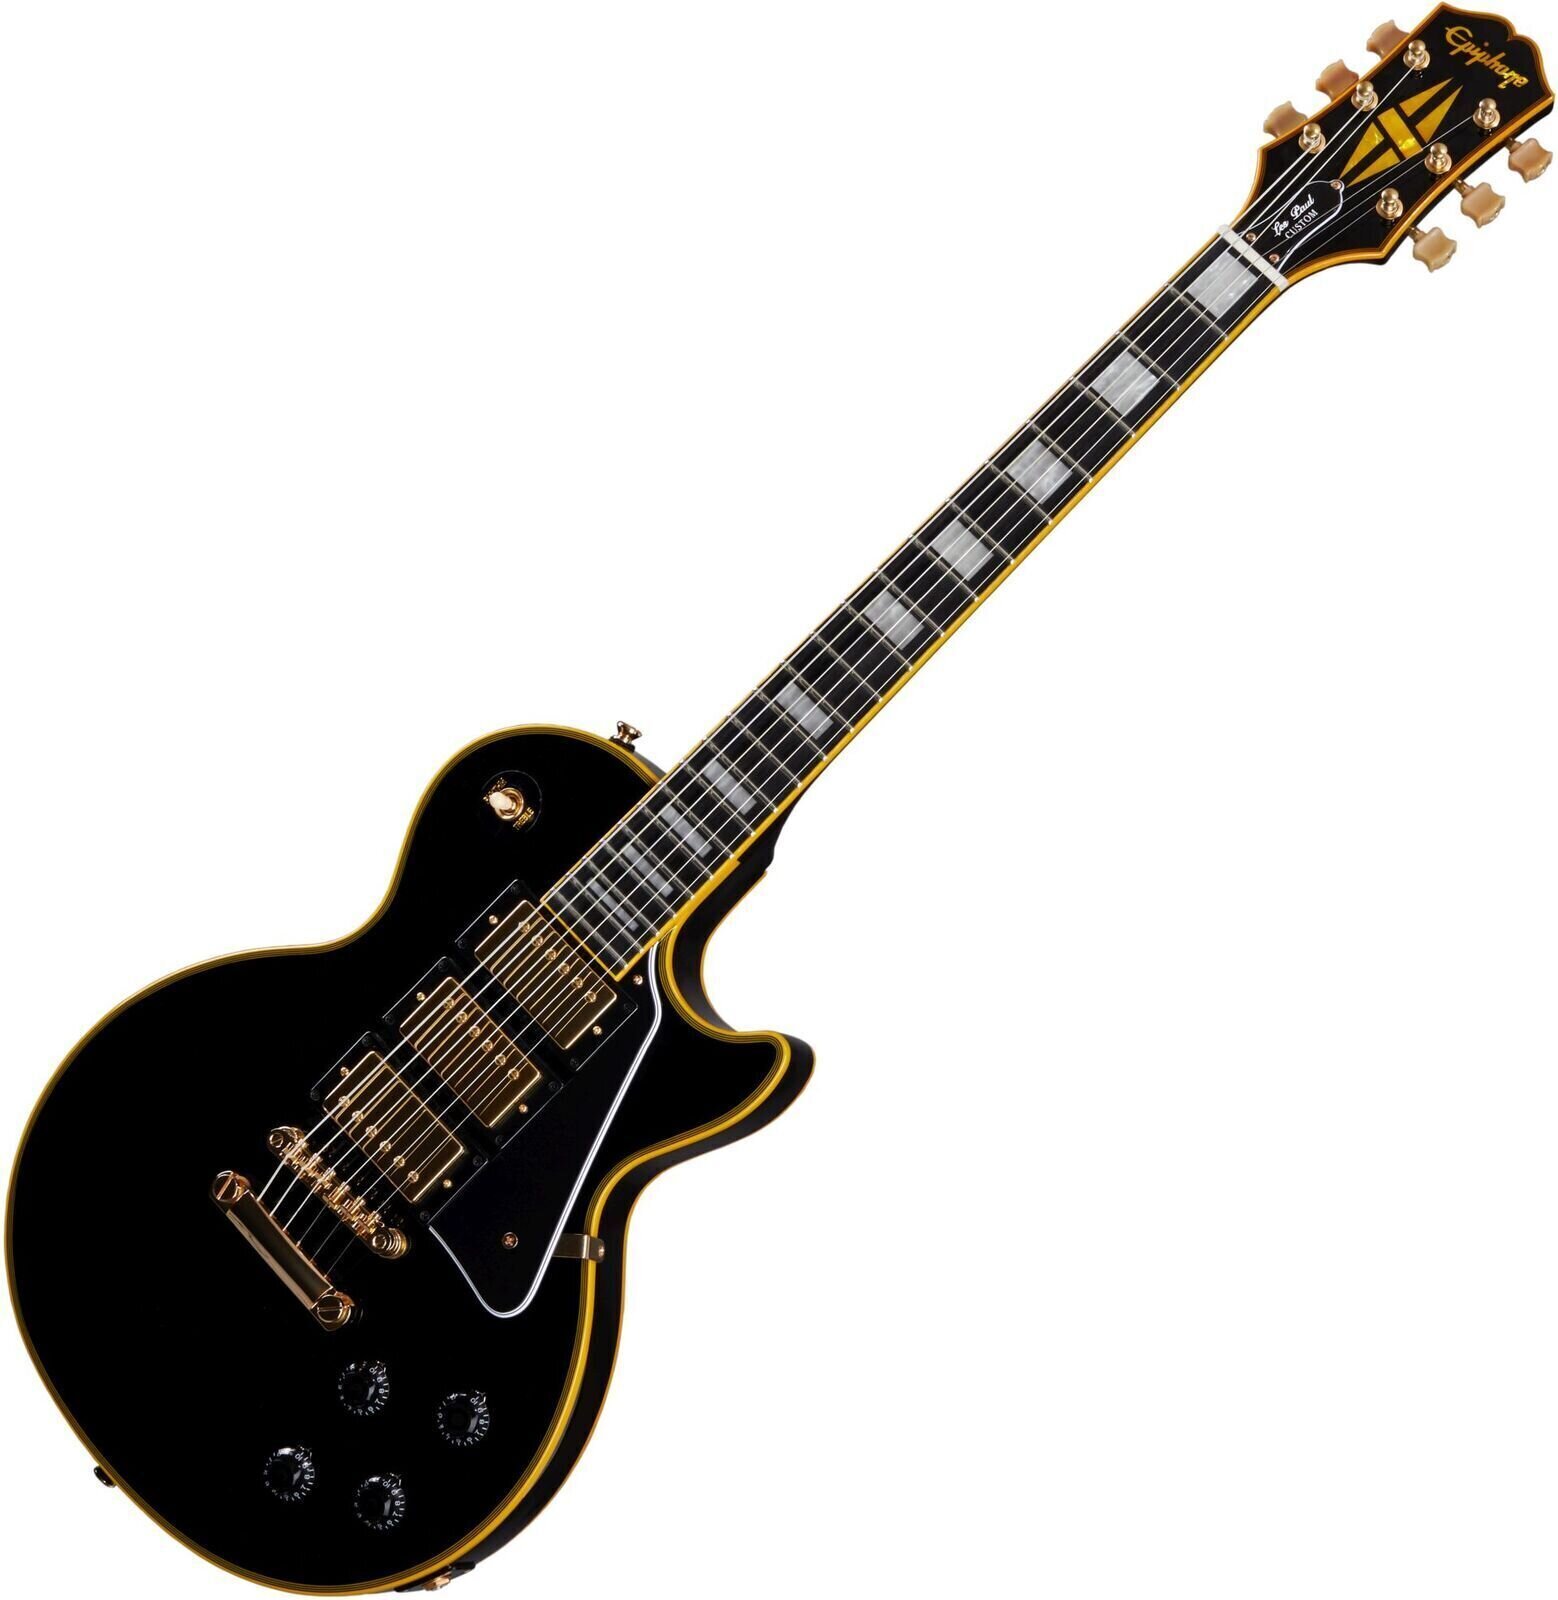 Electric guitar Epiphone Joe Bonamassa Black Beauty Les Paul Custom Black